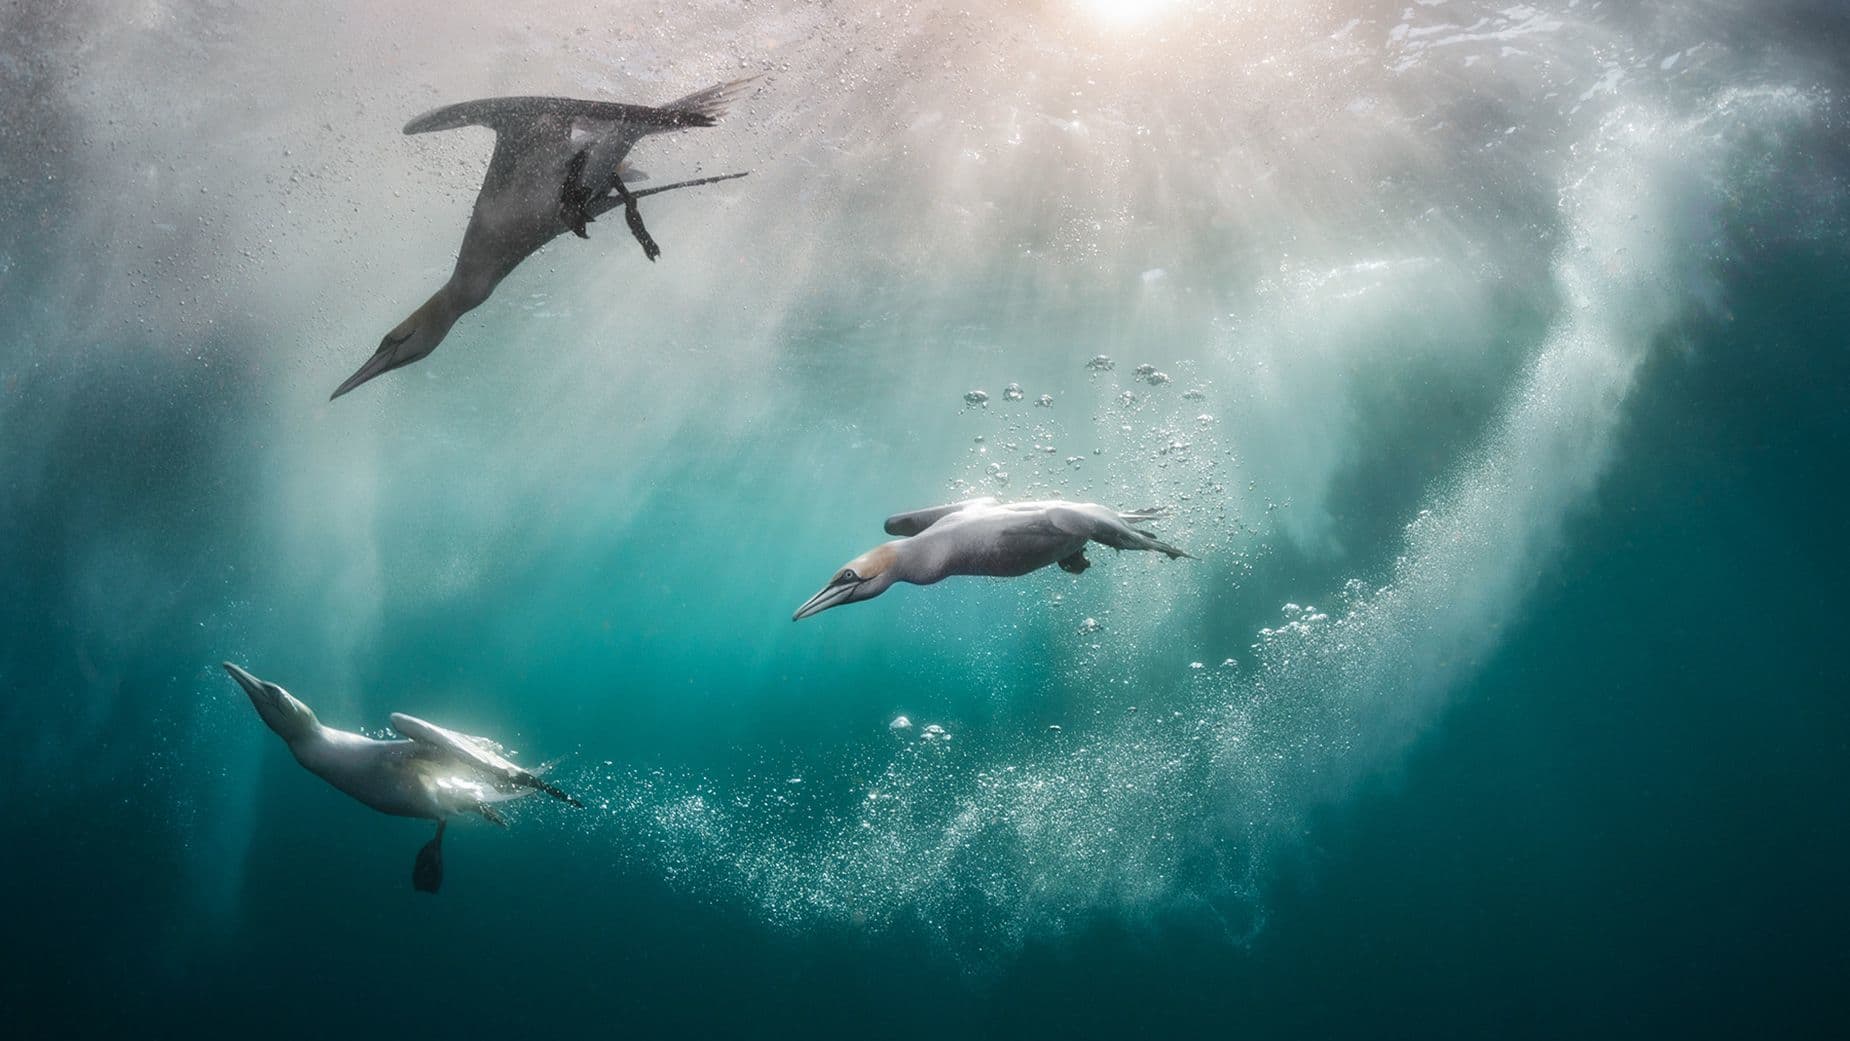 السباحة في البحار الشفافة.. مصور سينمائي يوثق قصصا رائعة من المحيطات